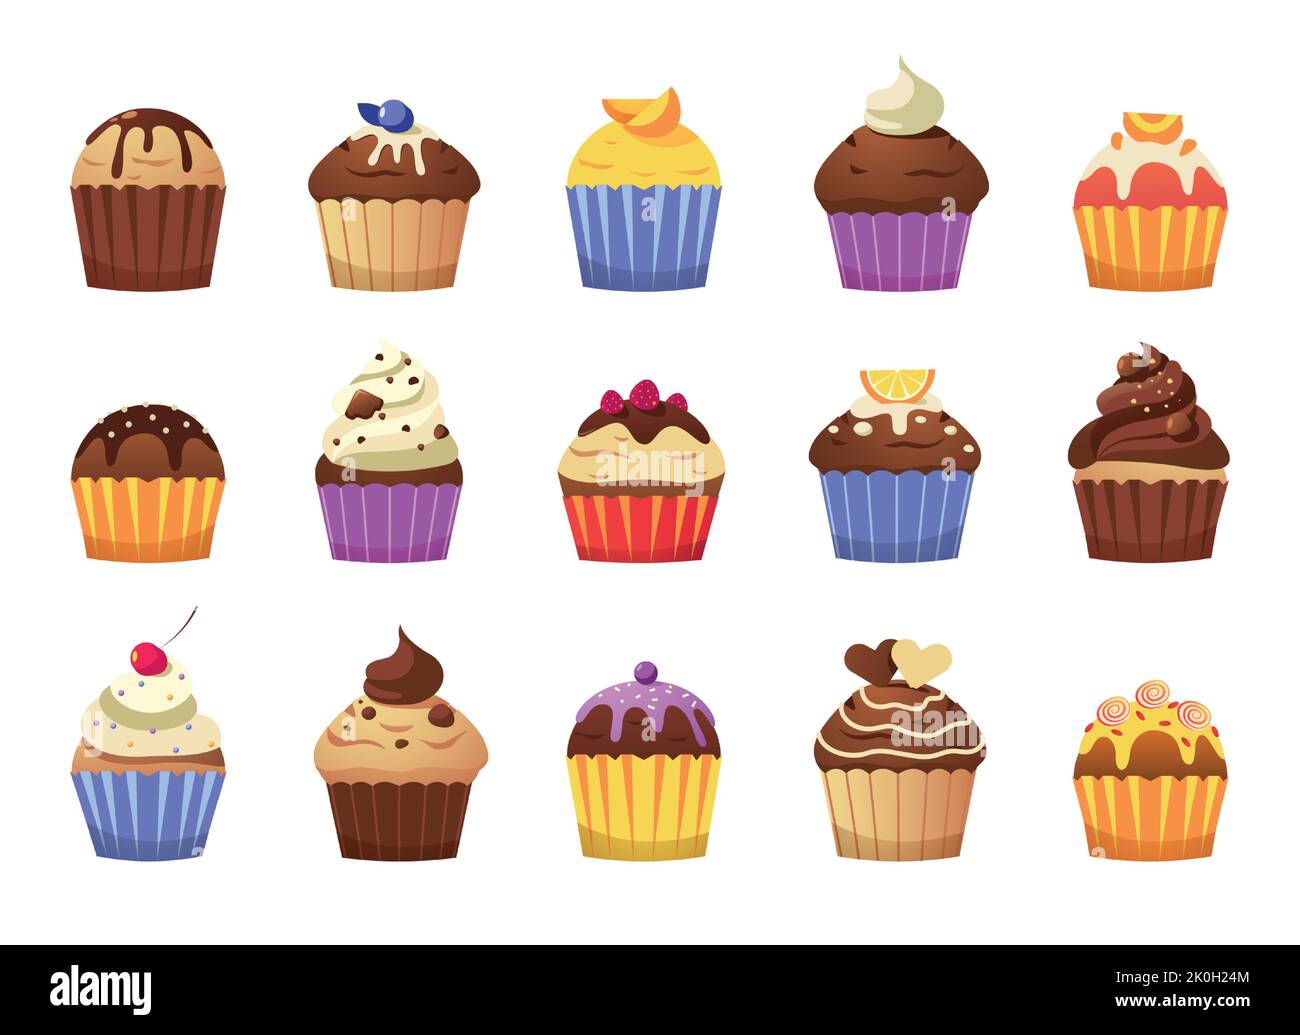 Cartoon Cupcakes. Leckere Muffins mit Rahm und Streuseln, bunte süße Desserts zum Feiern oder Frühstück, Backwaren mit Tüpfelchen Stock Vektor